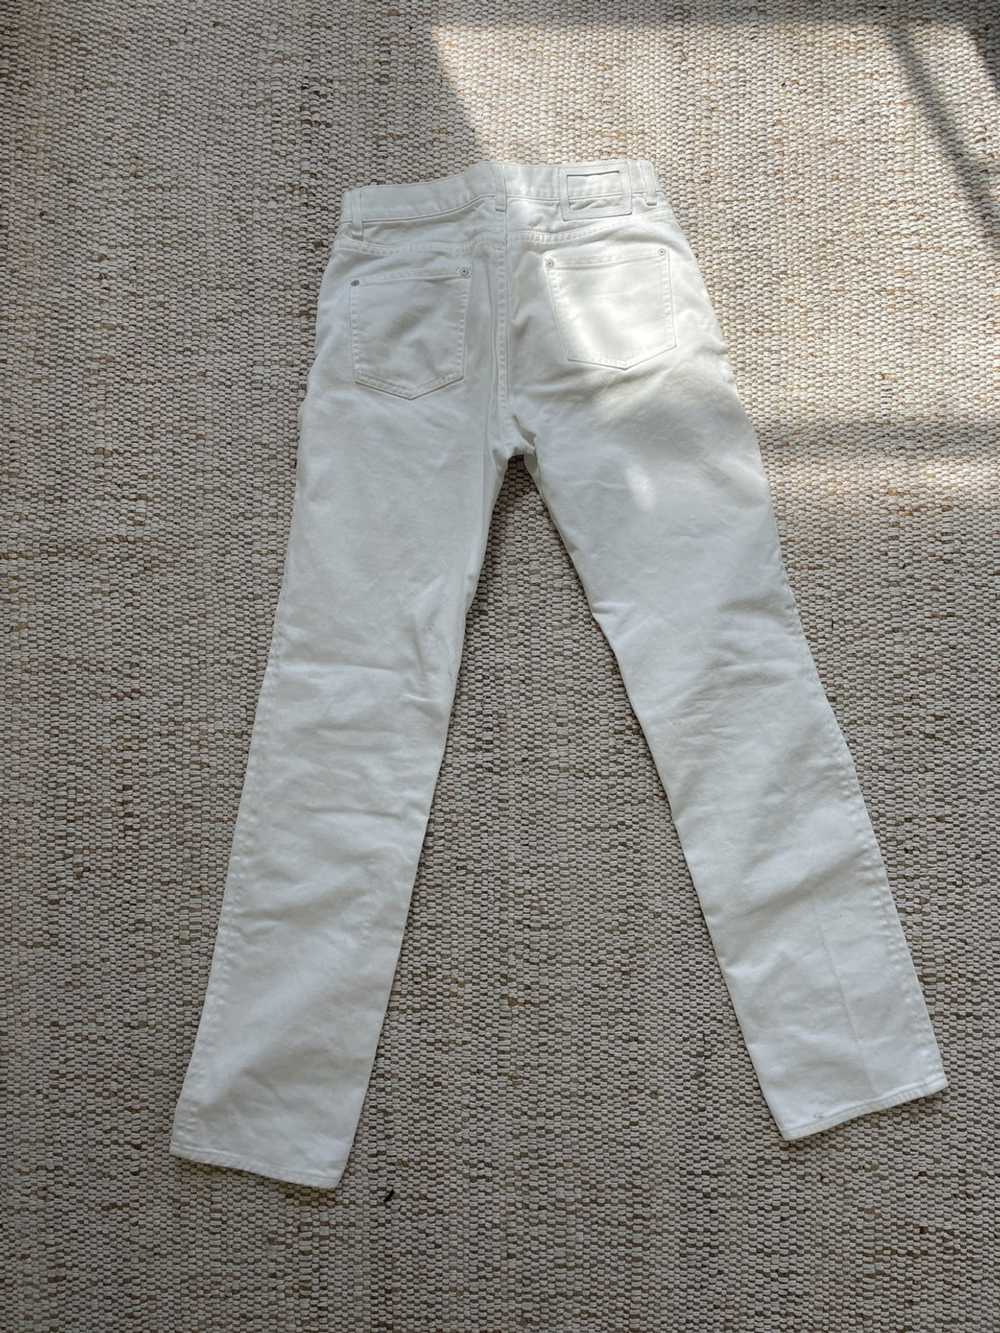 Maison Margiela Margiela white jeans - image 3